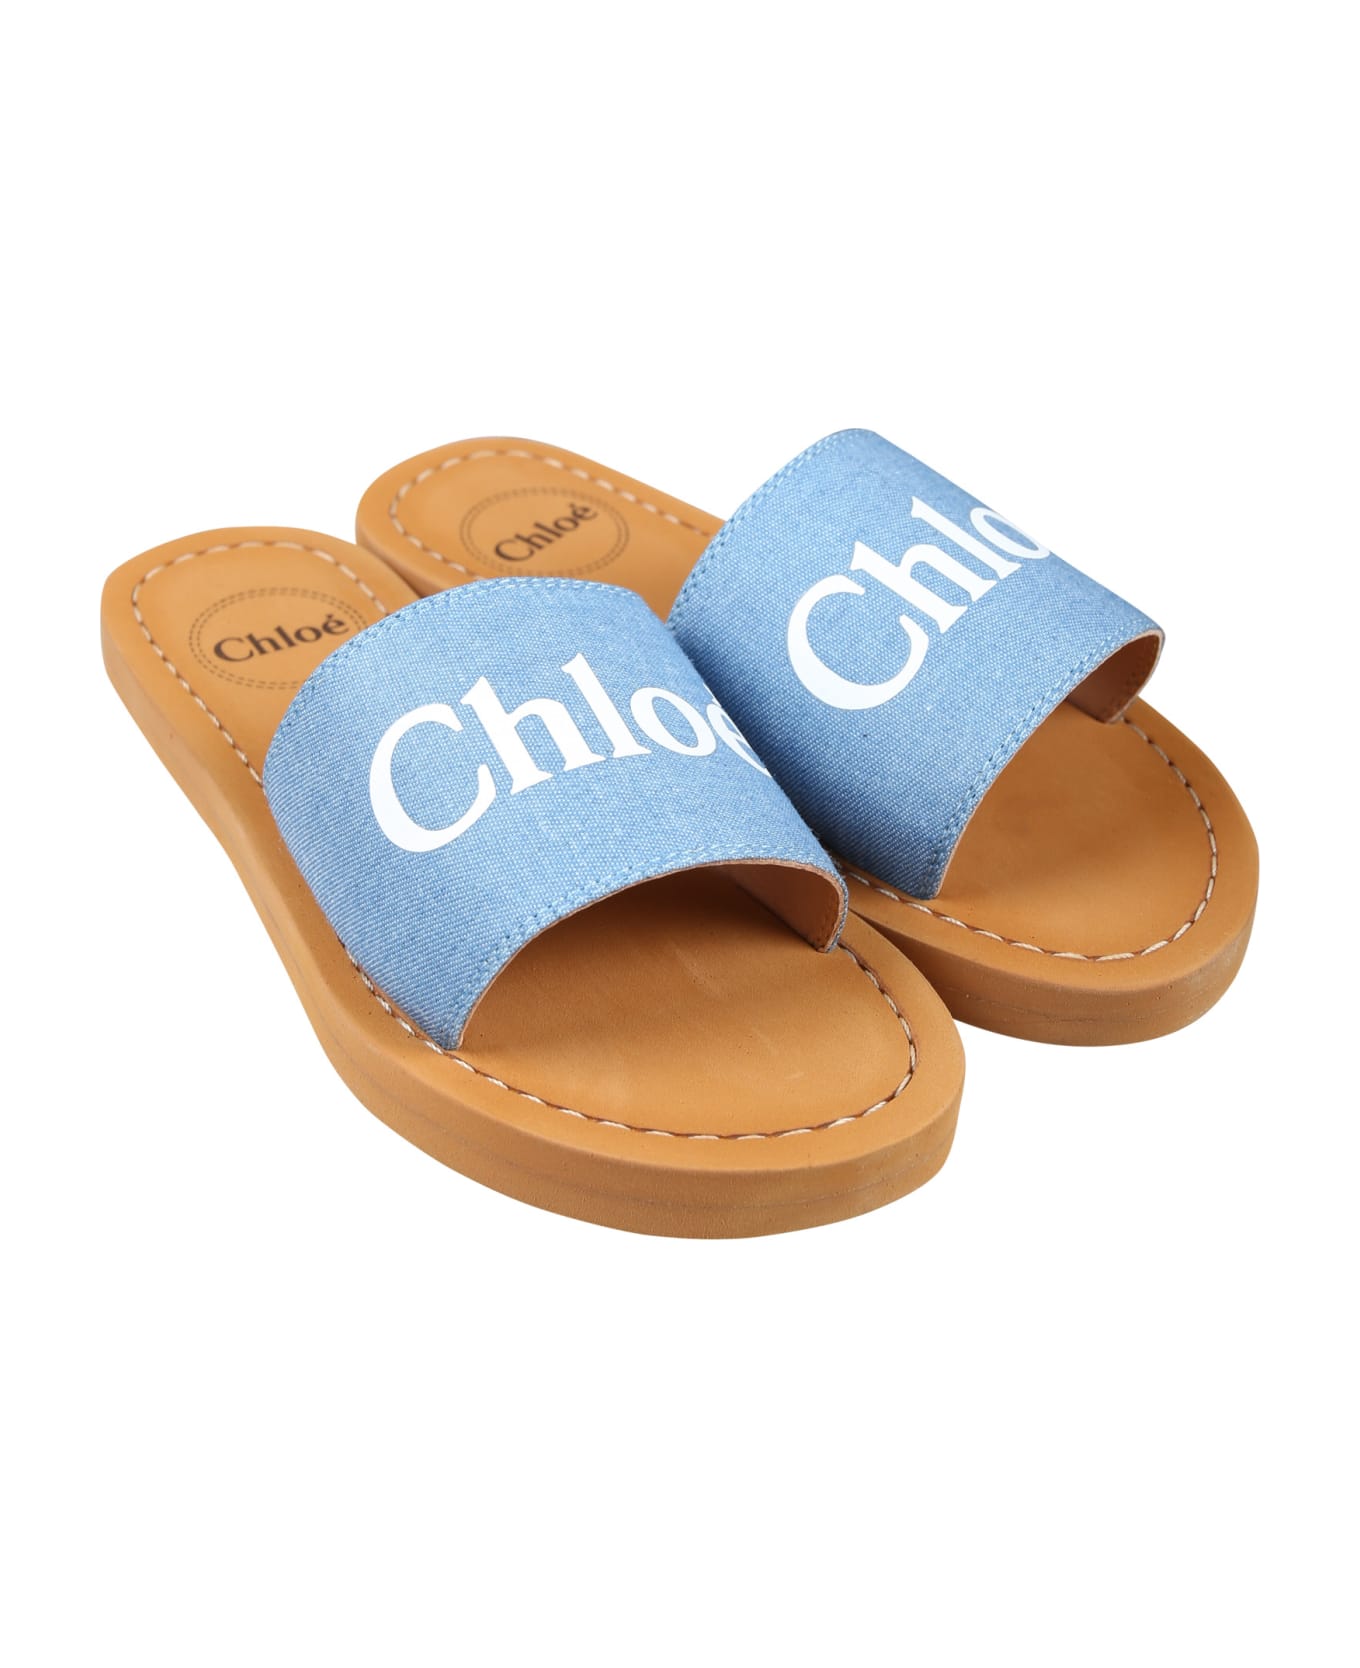 Chloé Denim Slippers For Girl With Logo - Denim